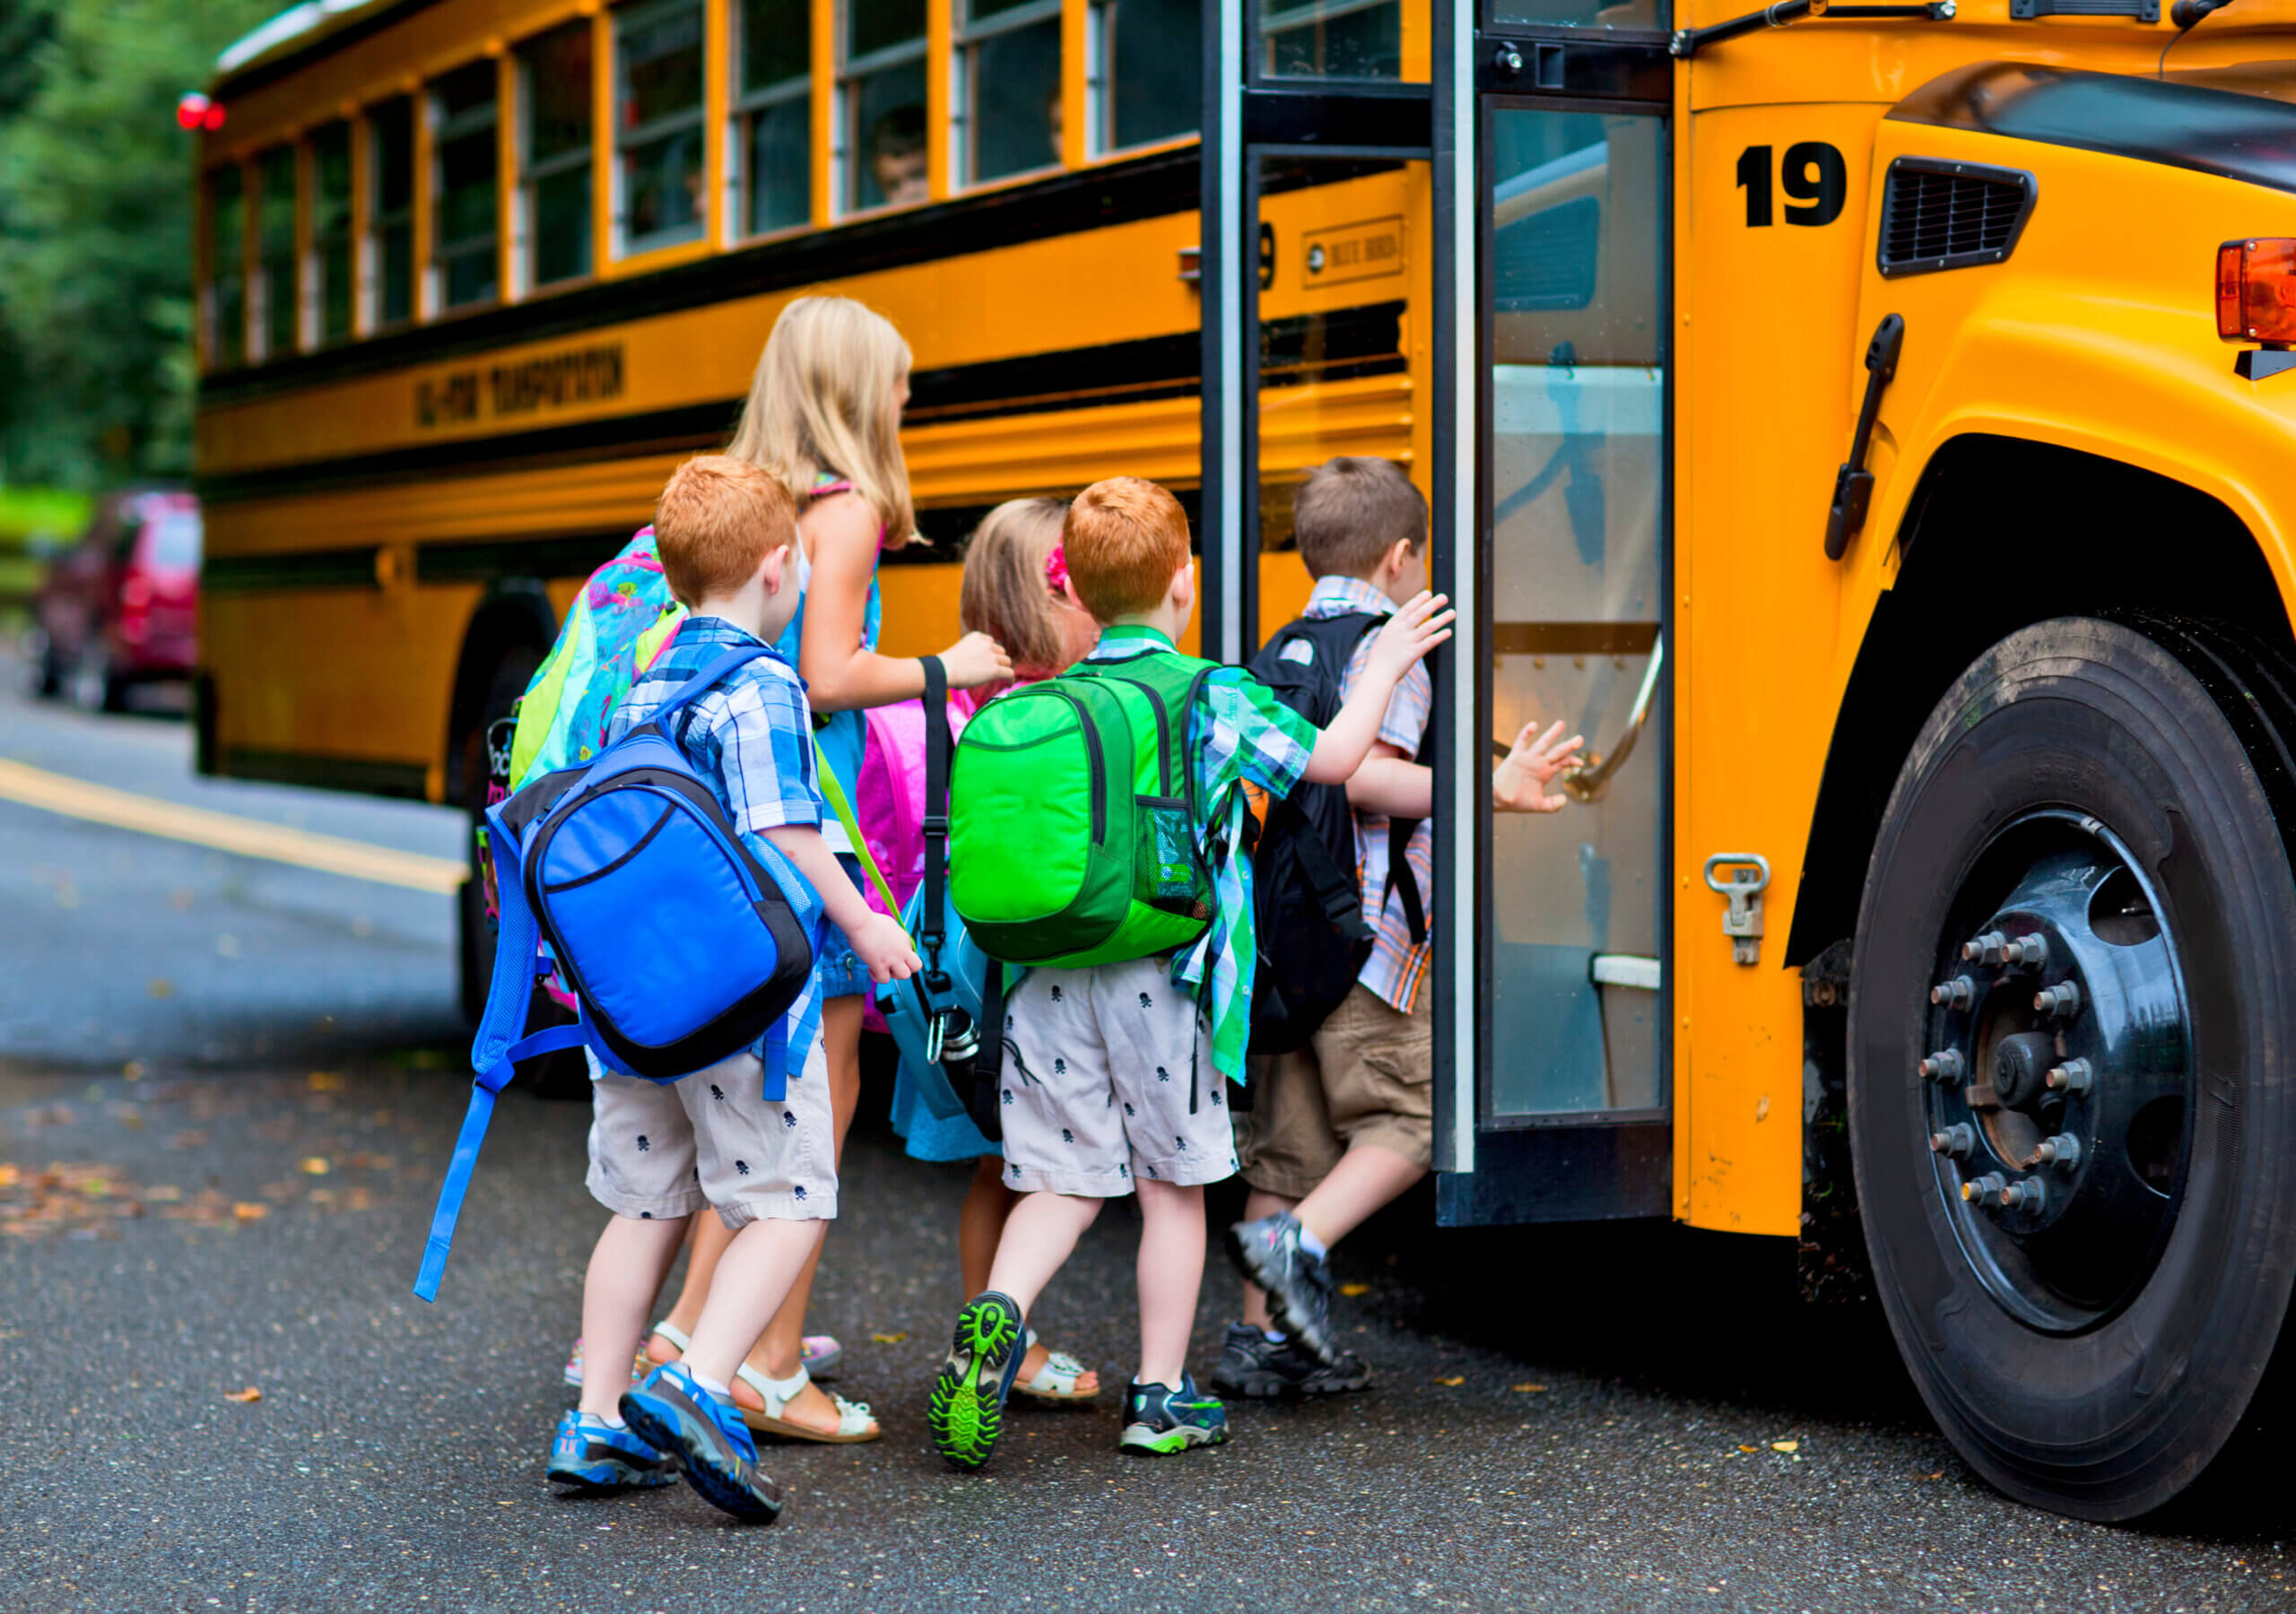 Автобусы дети новый. Автобусные экскурсии дети. Школьные экскурсии автобусные. Дети в автобусе на экскурсии. Автобус для детей.